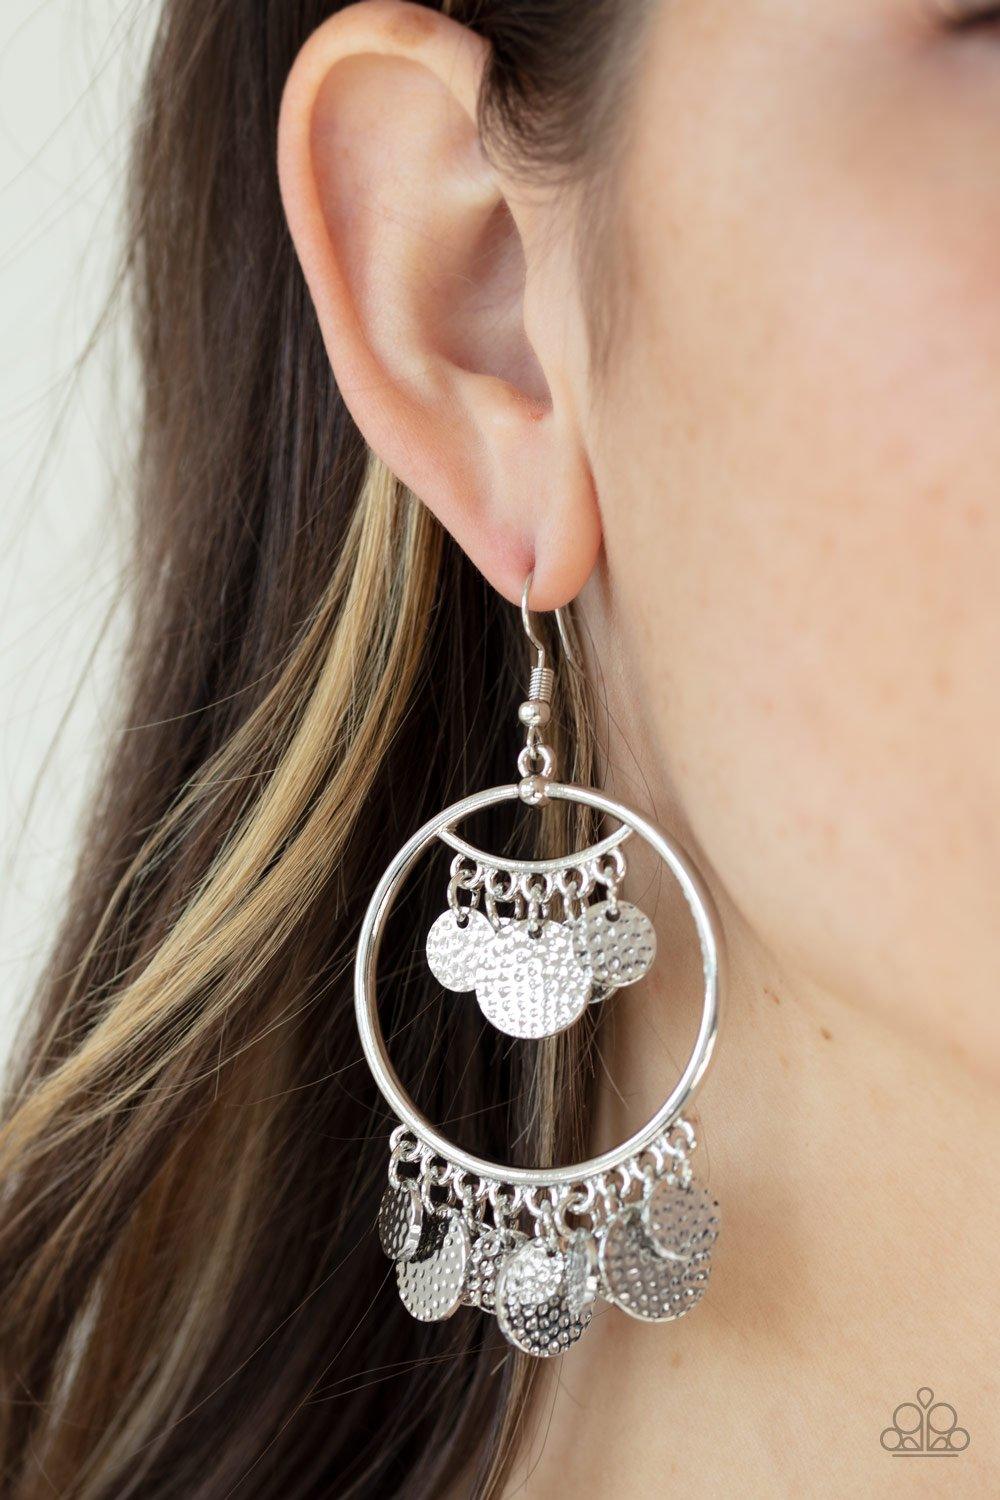 All-CHIME High Silver Earrings - Jewelry By Bretta - Jewelry by Bretta